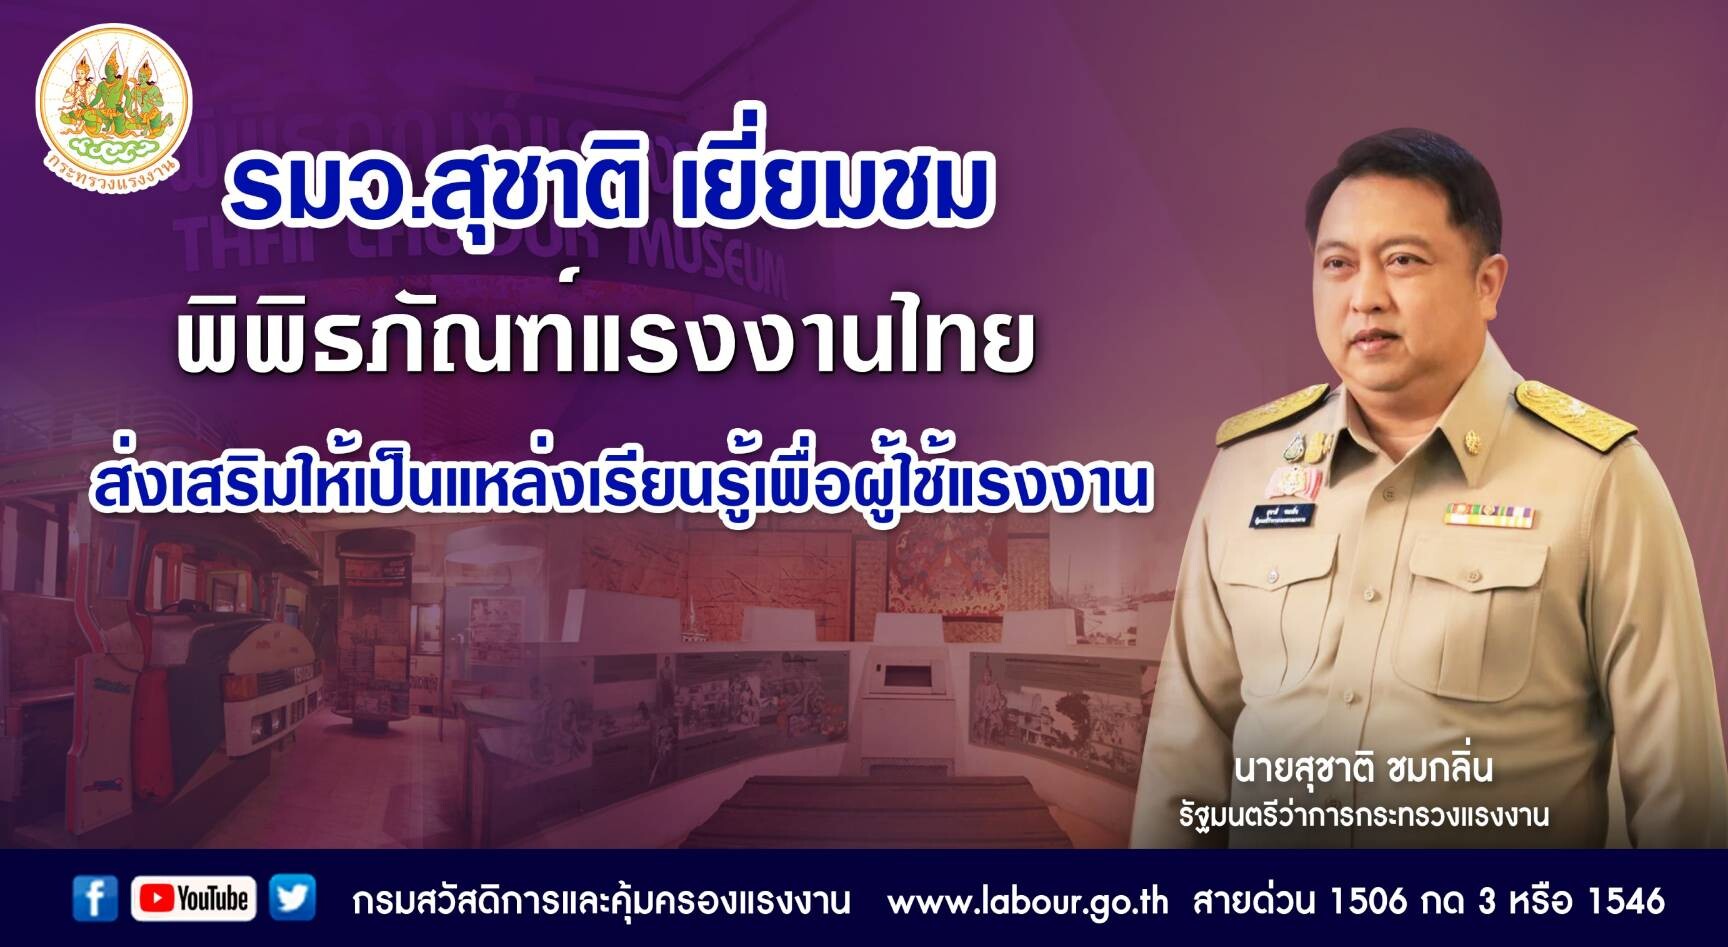 รมว.สุชาติ เยี่ยมชม พิพิธภัณฑ์แรงงานไทย ส่งเสริมให้เป็นแหล่งเรียนรู้เพื่อผู้ใช้แรงงาน